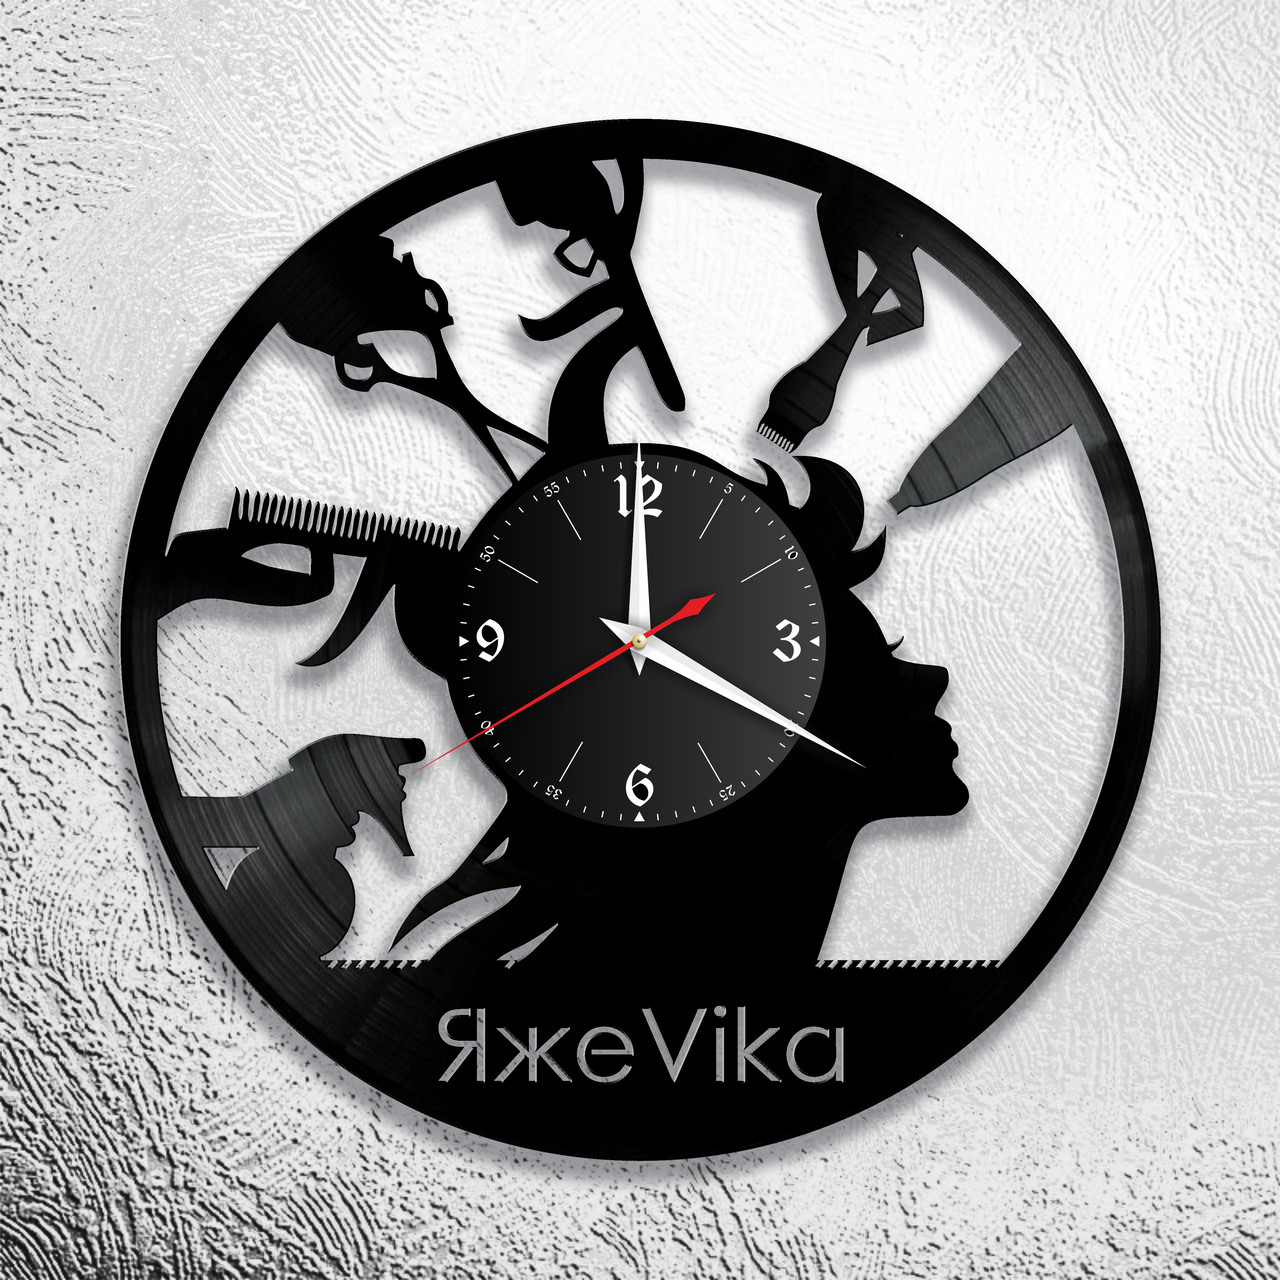 Оригинальные часы из виниловых пластинок "Парикмахерская" версия 6